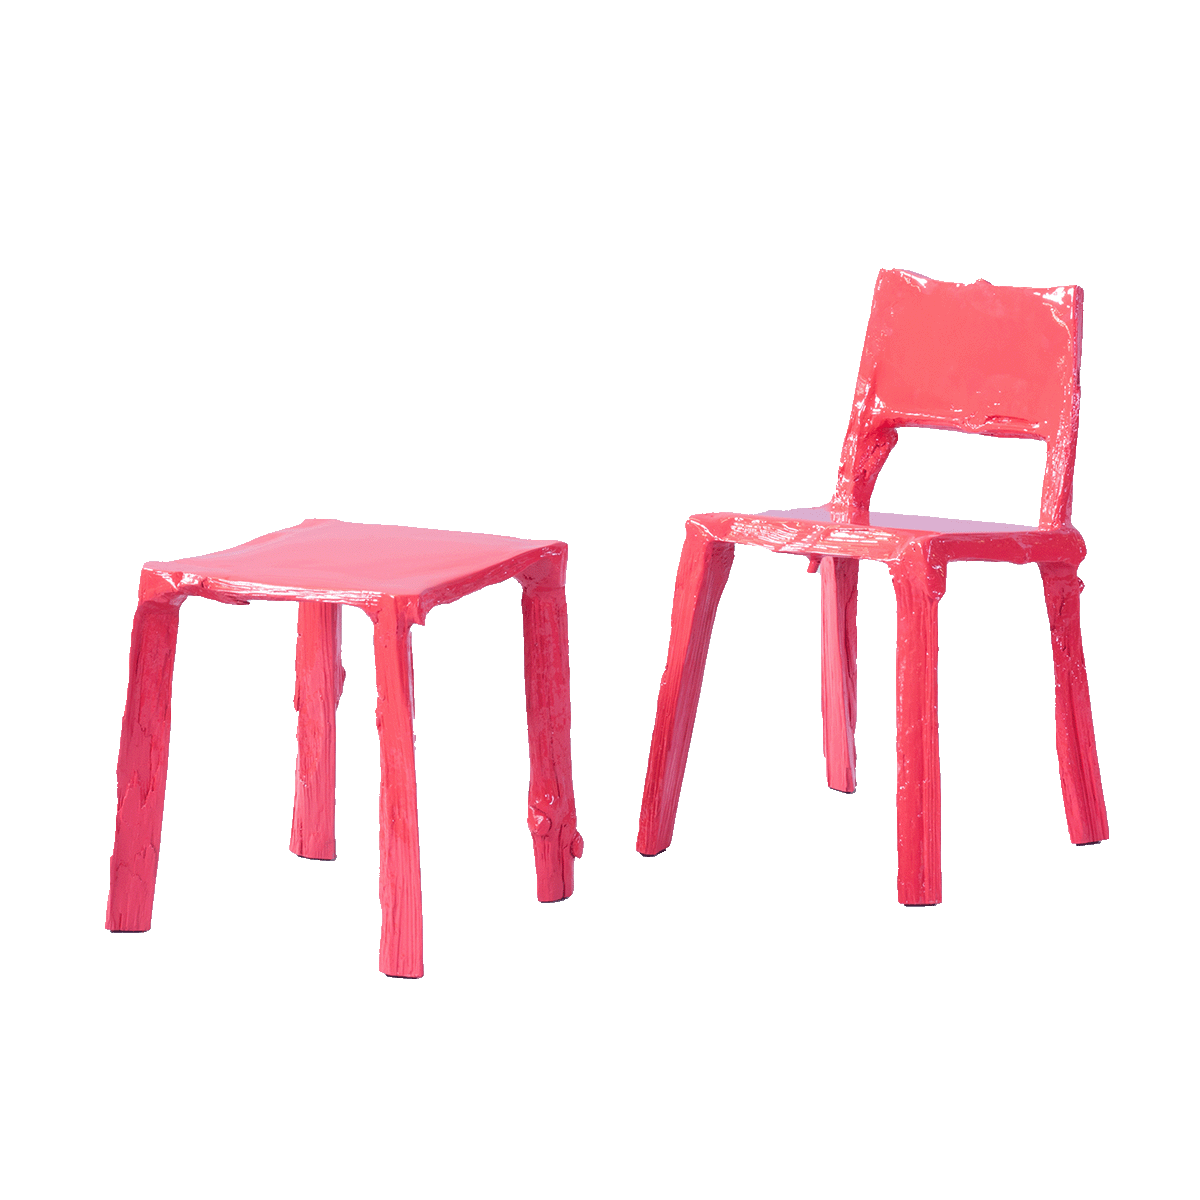 stool | Splitted